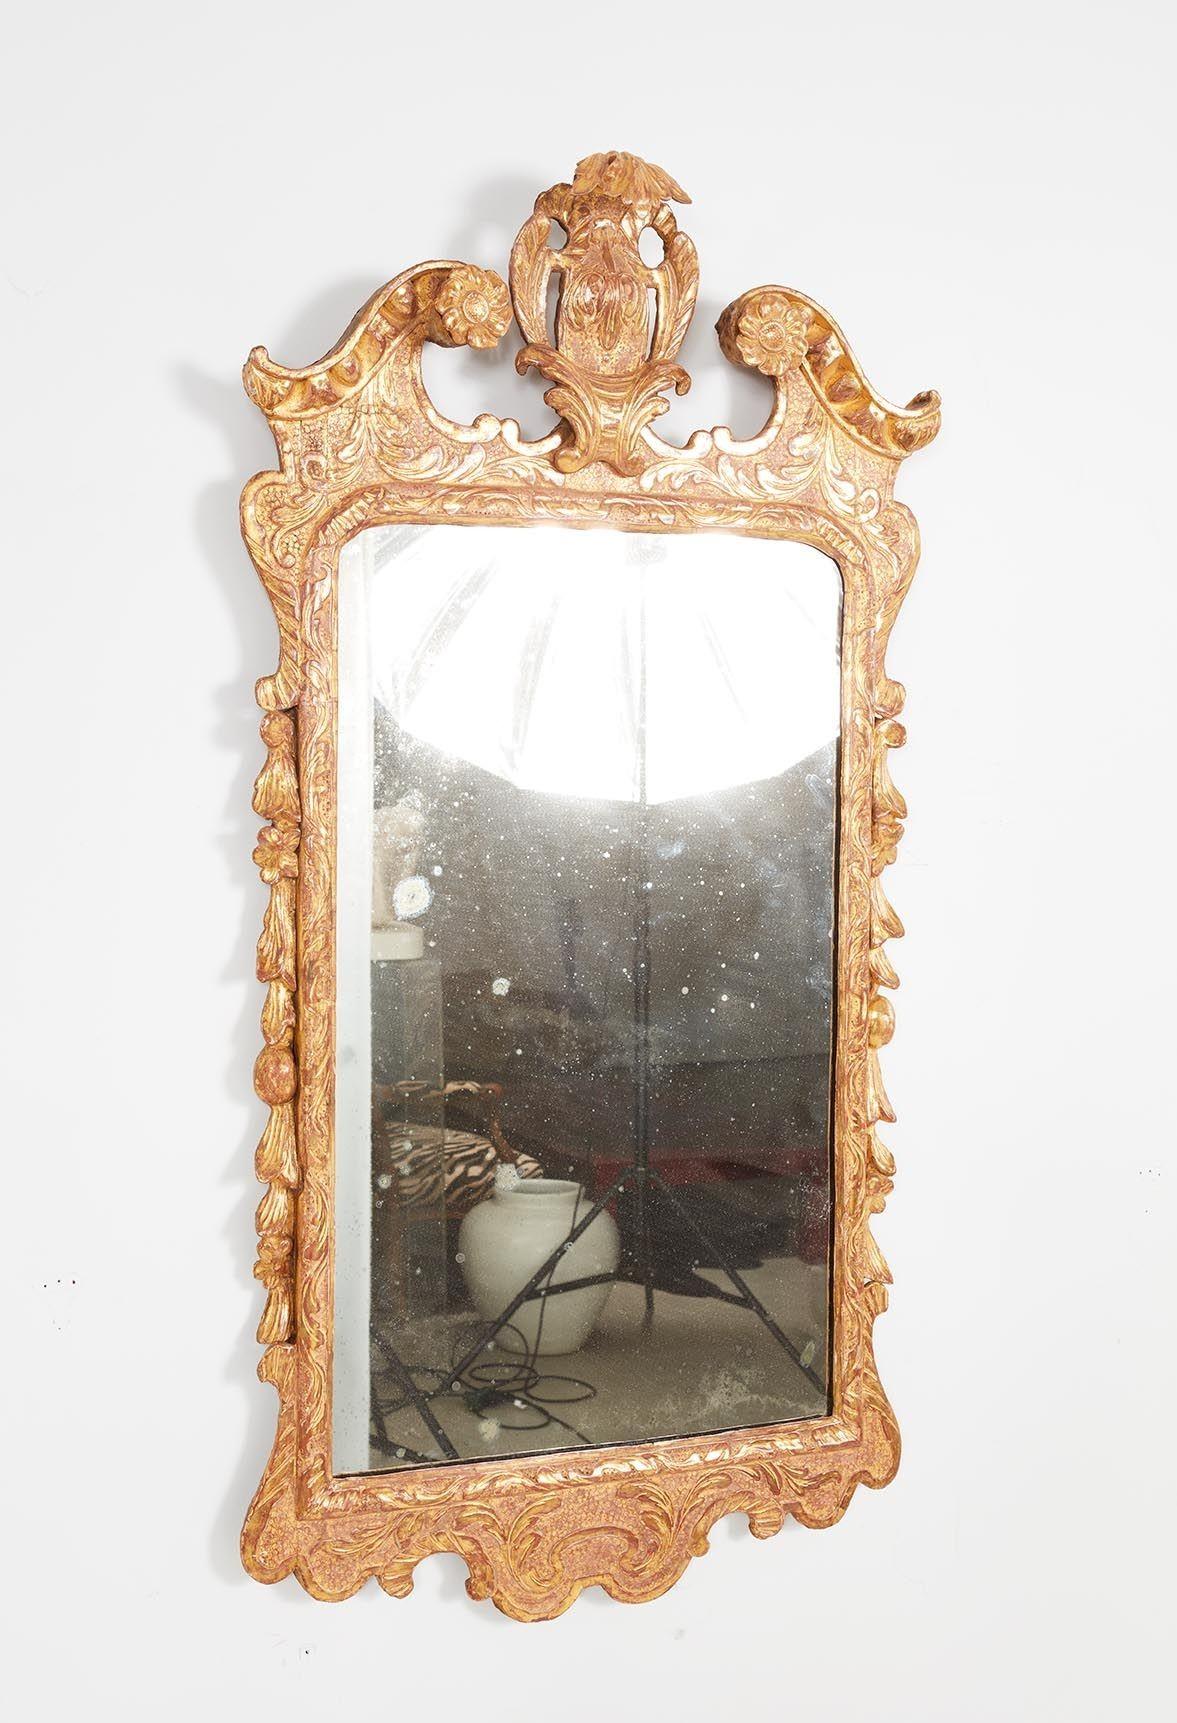 Gute George II geschnitzt Holz und vergoldet Gesso Spiegel, die zentrale Kartusche flankiert von Schwanenhals Giebel mit Ei und Pfeil geschnitzt geformte Kante, der Körper mit blattförmigen Relief Schnitzerei auf einem gepanzerten Boden, die Seiten